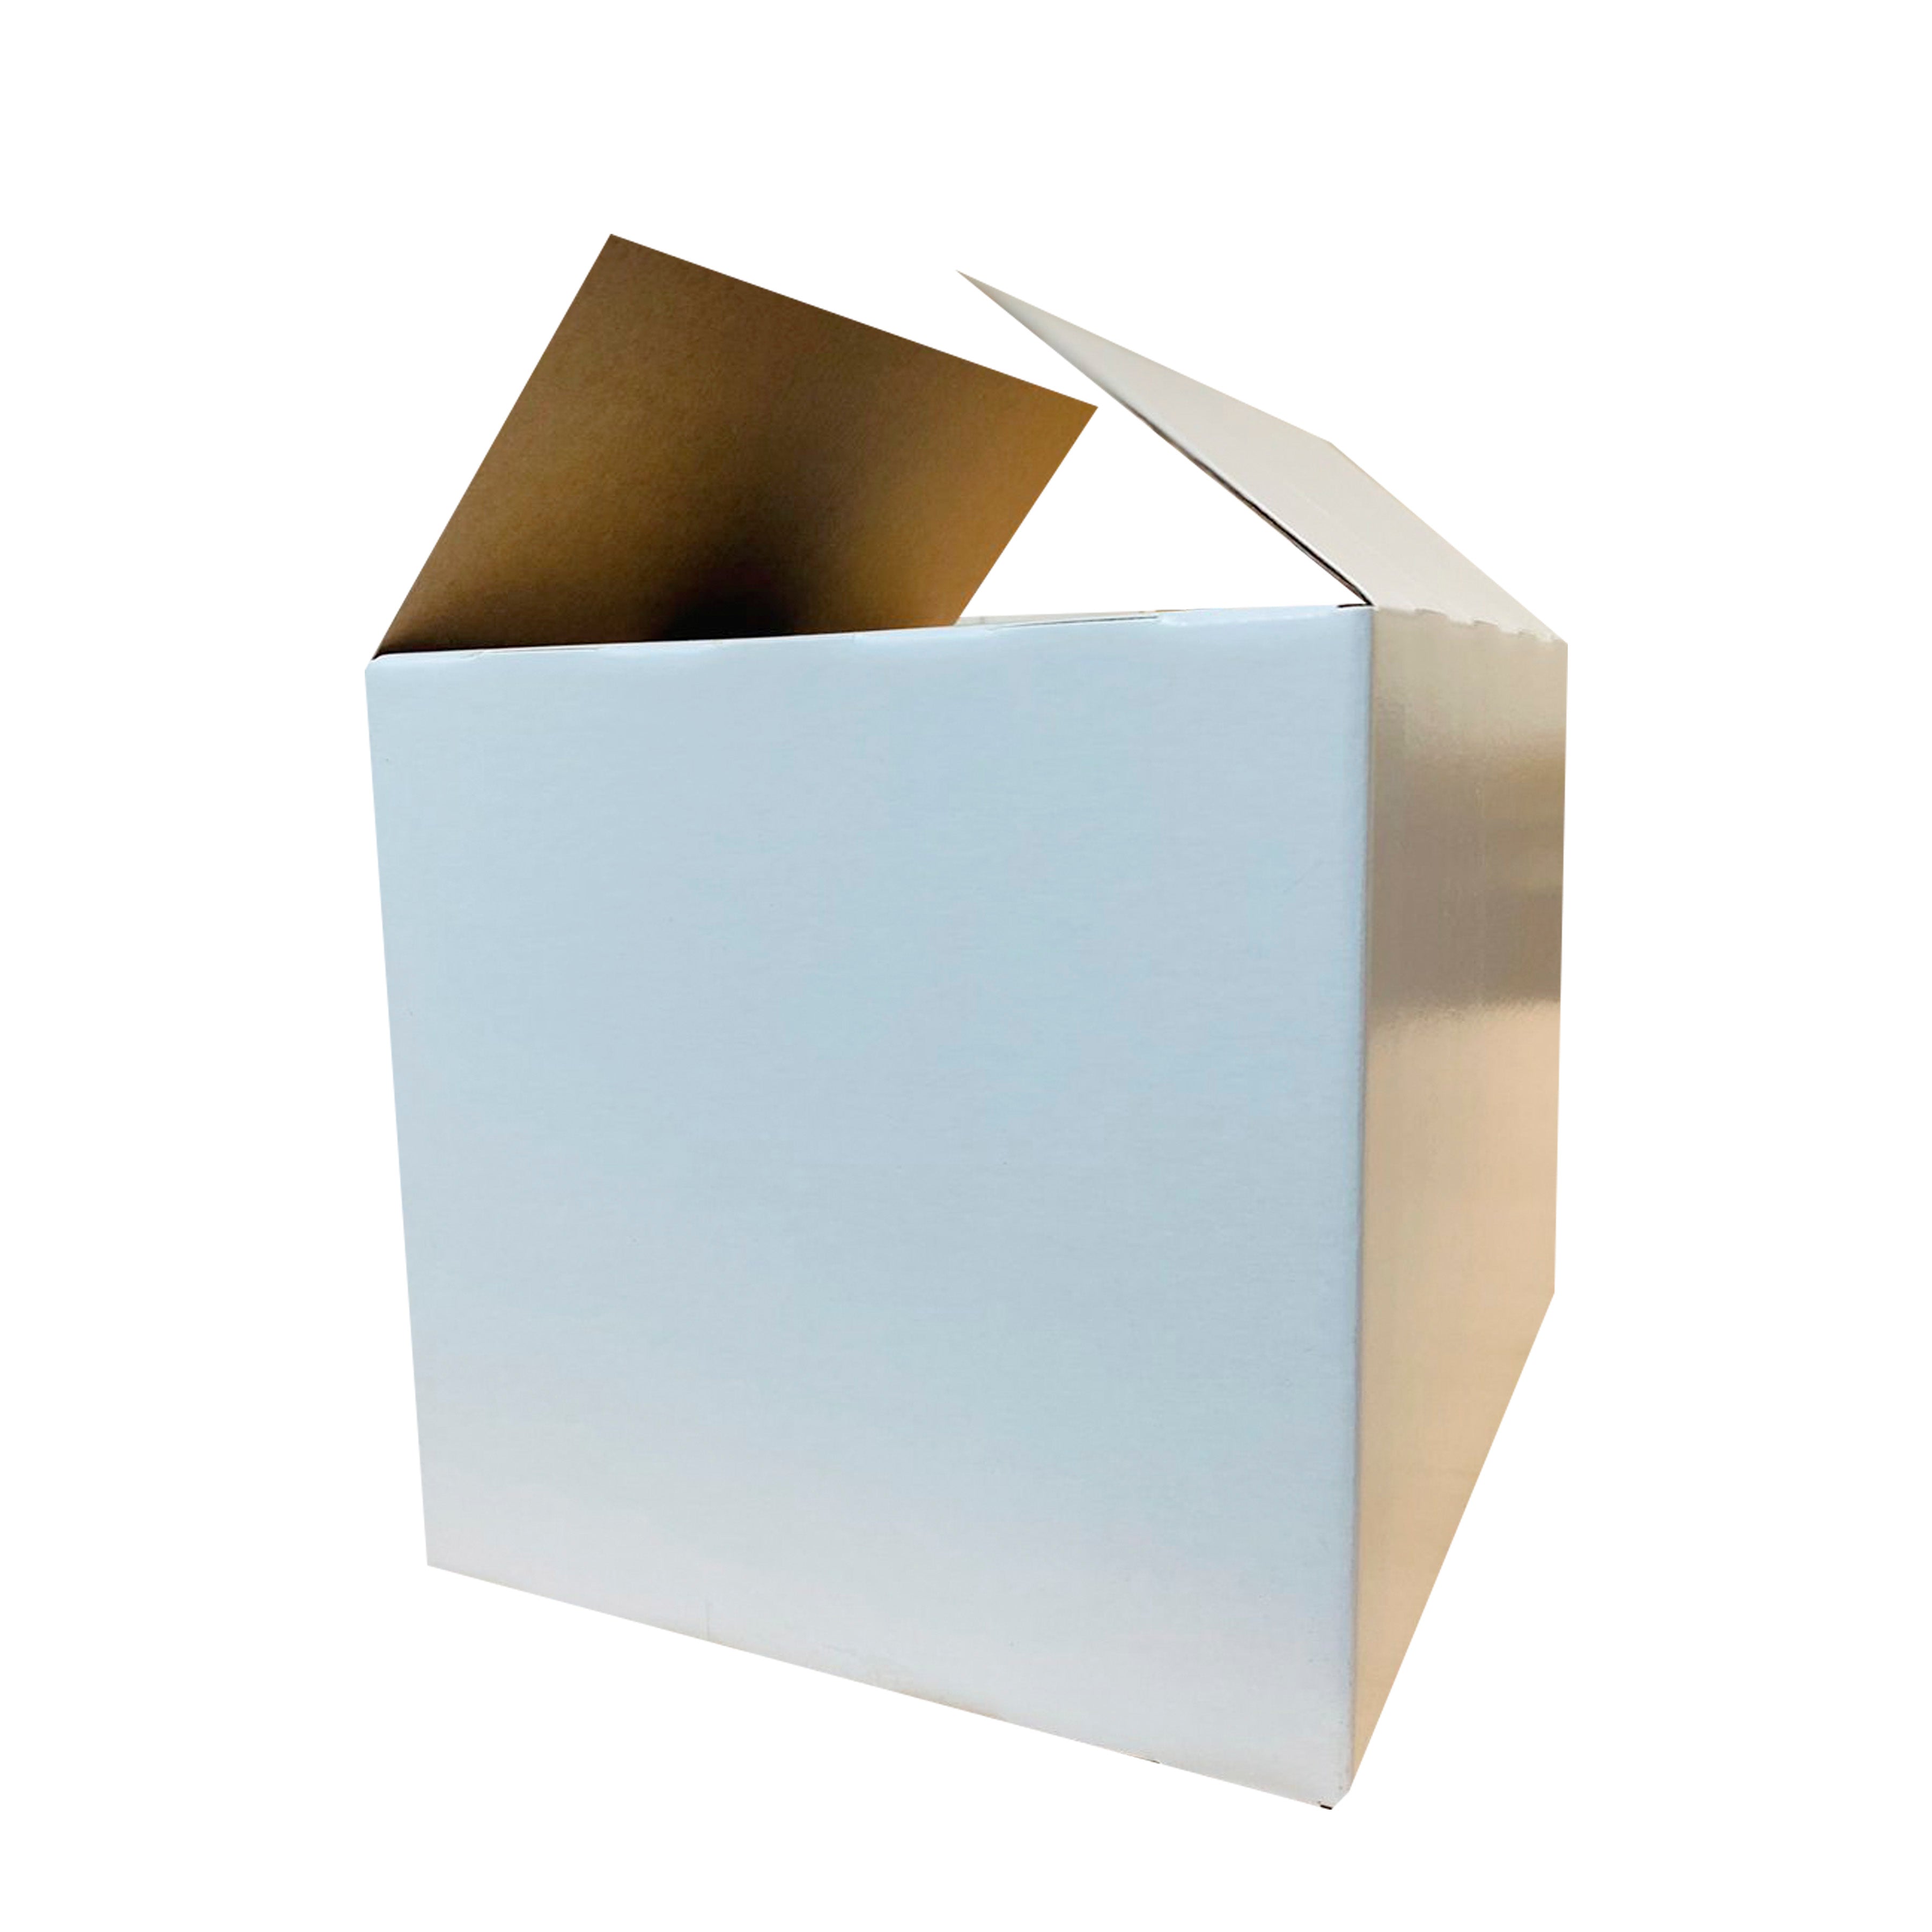 caja chica para regalo, caja chica para envió, cajas de cartón para regalo, caja blanca de carton, caja de cartón blanca, caja para empaque, caja de corrugado, caja de micro corrugado